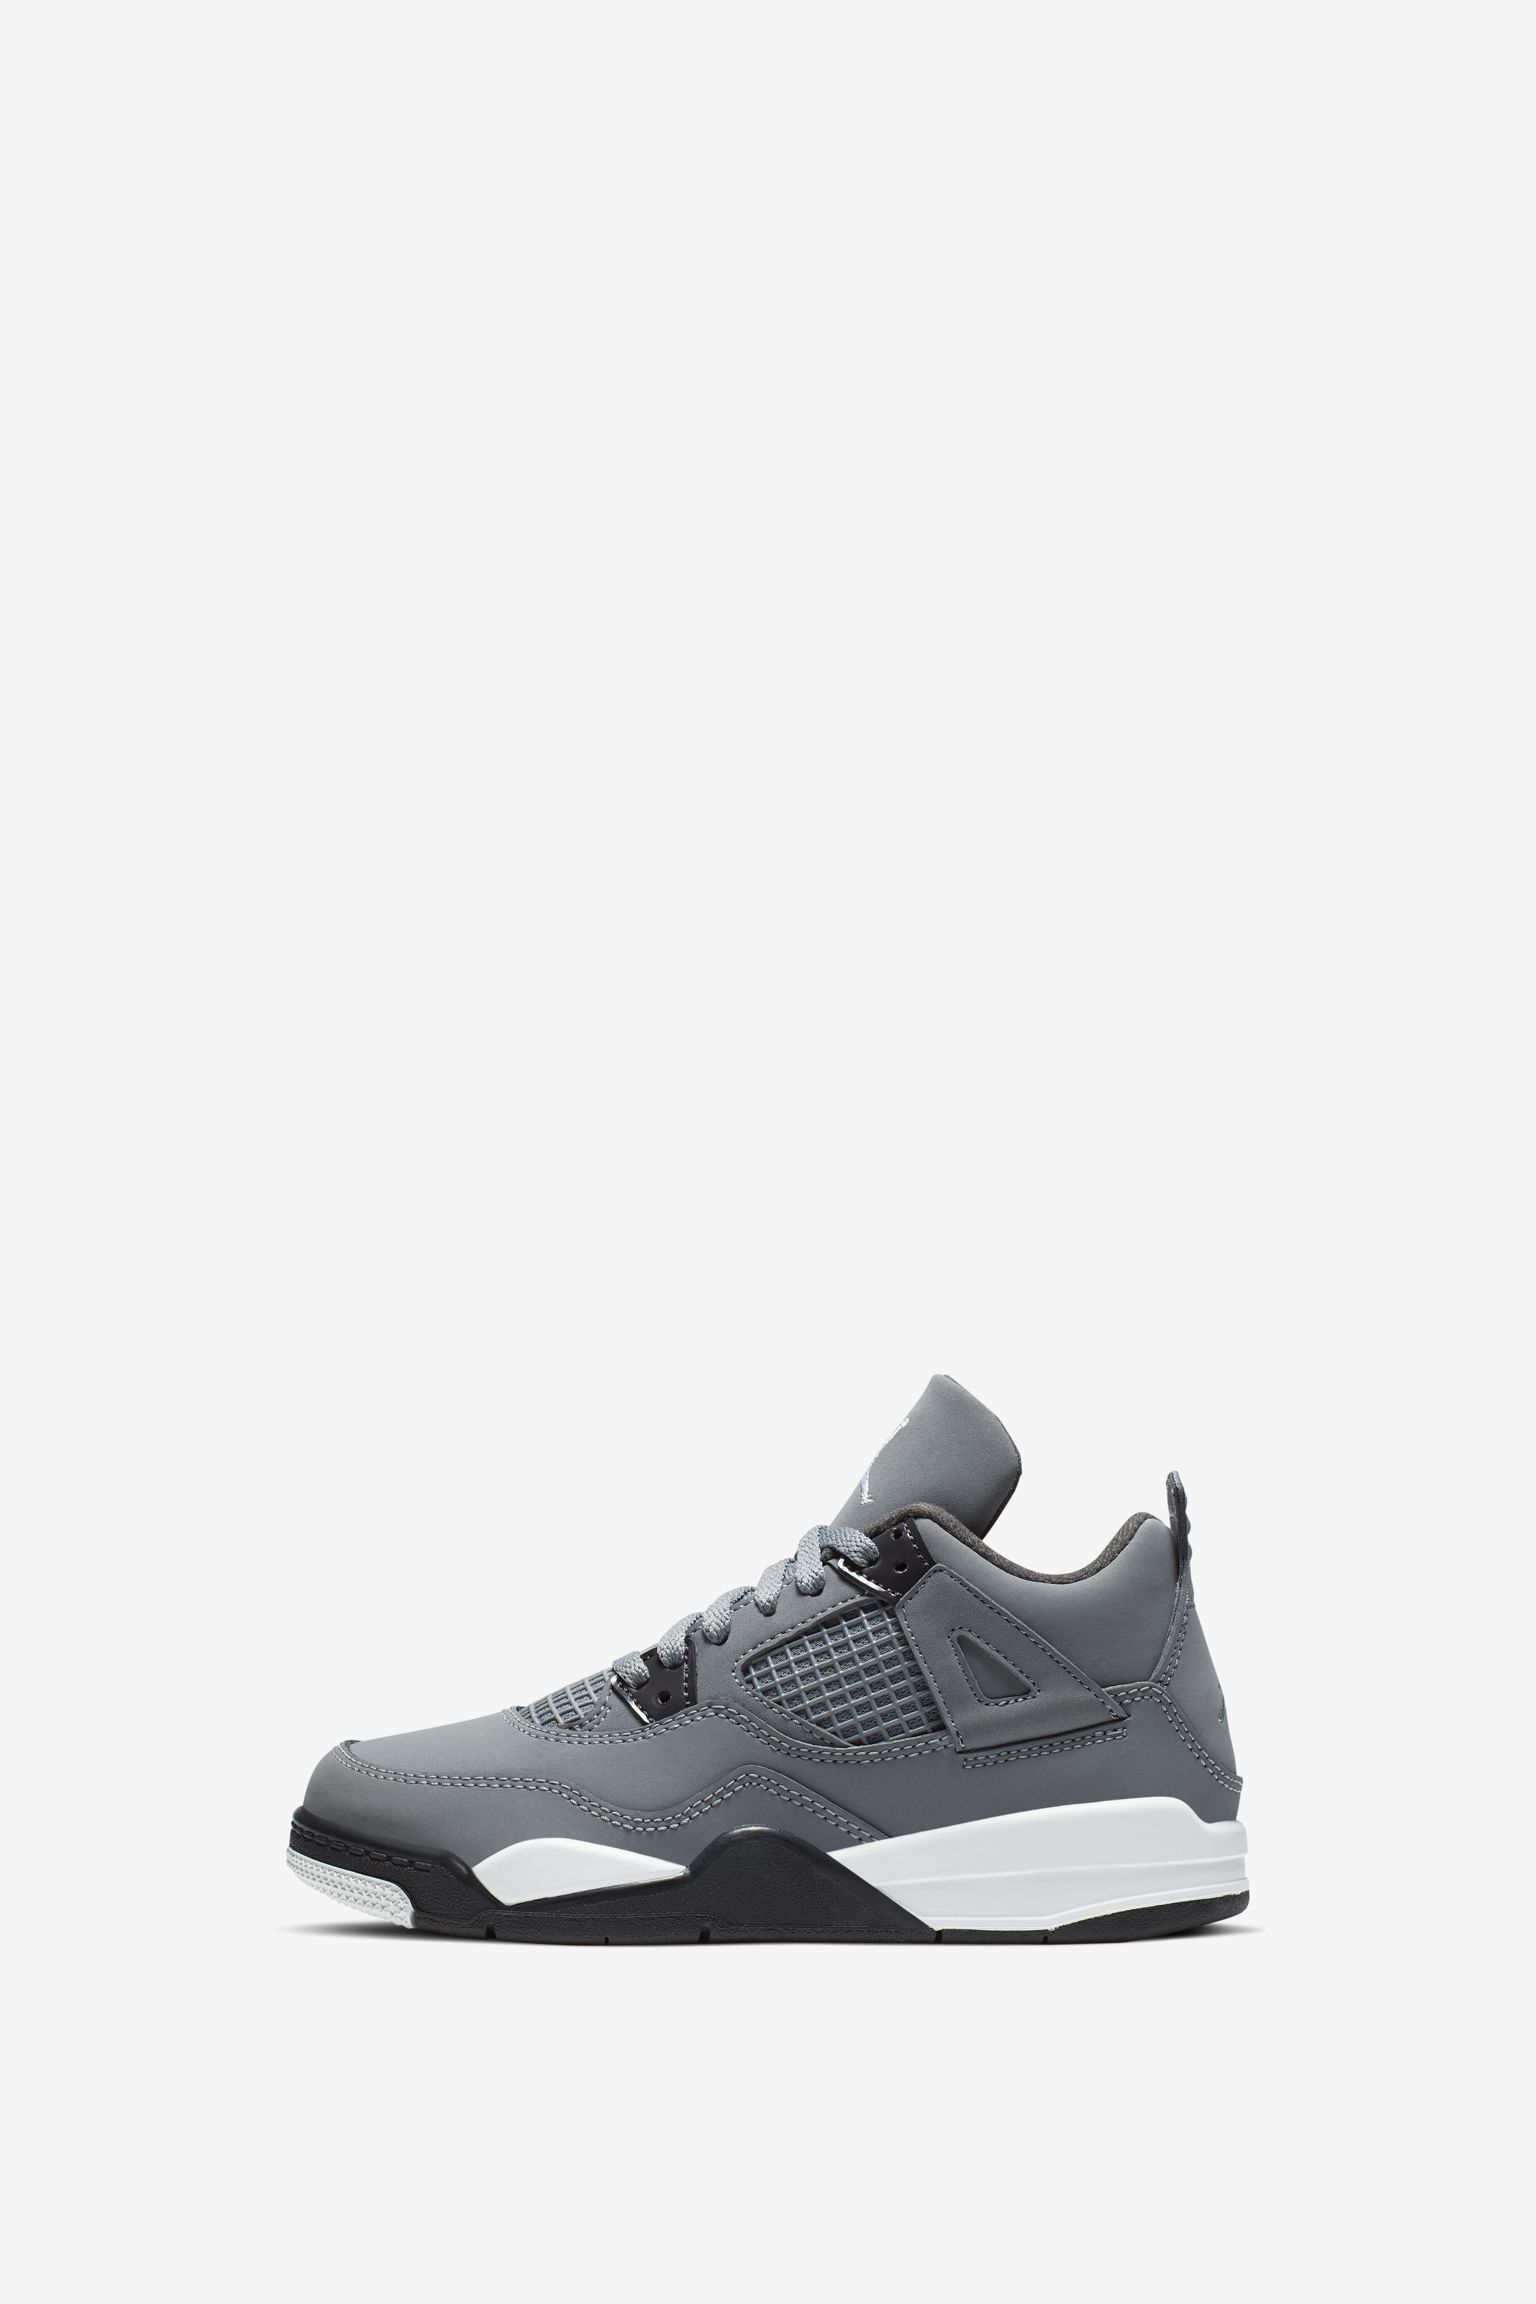 Nike Air Jordan 4 Cool GreyABC-MA